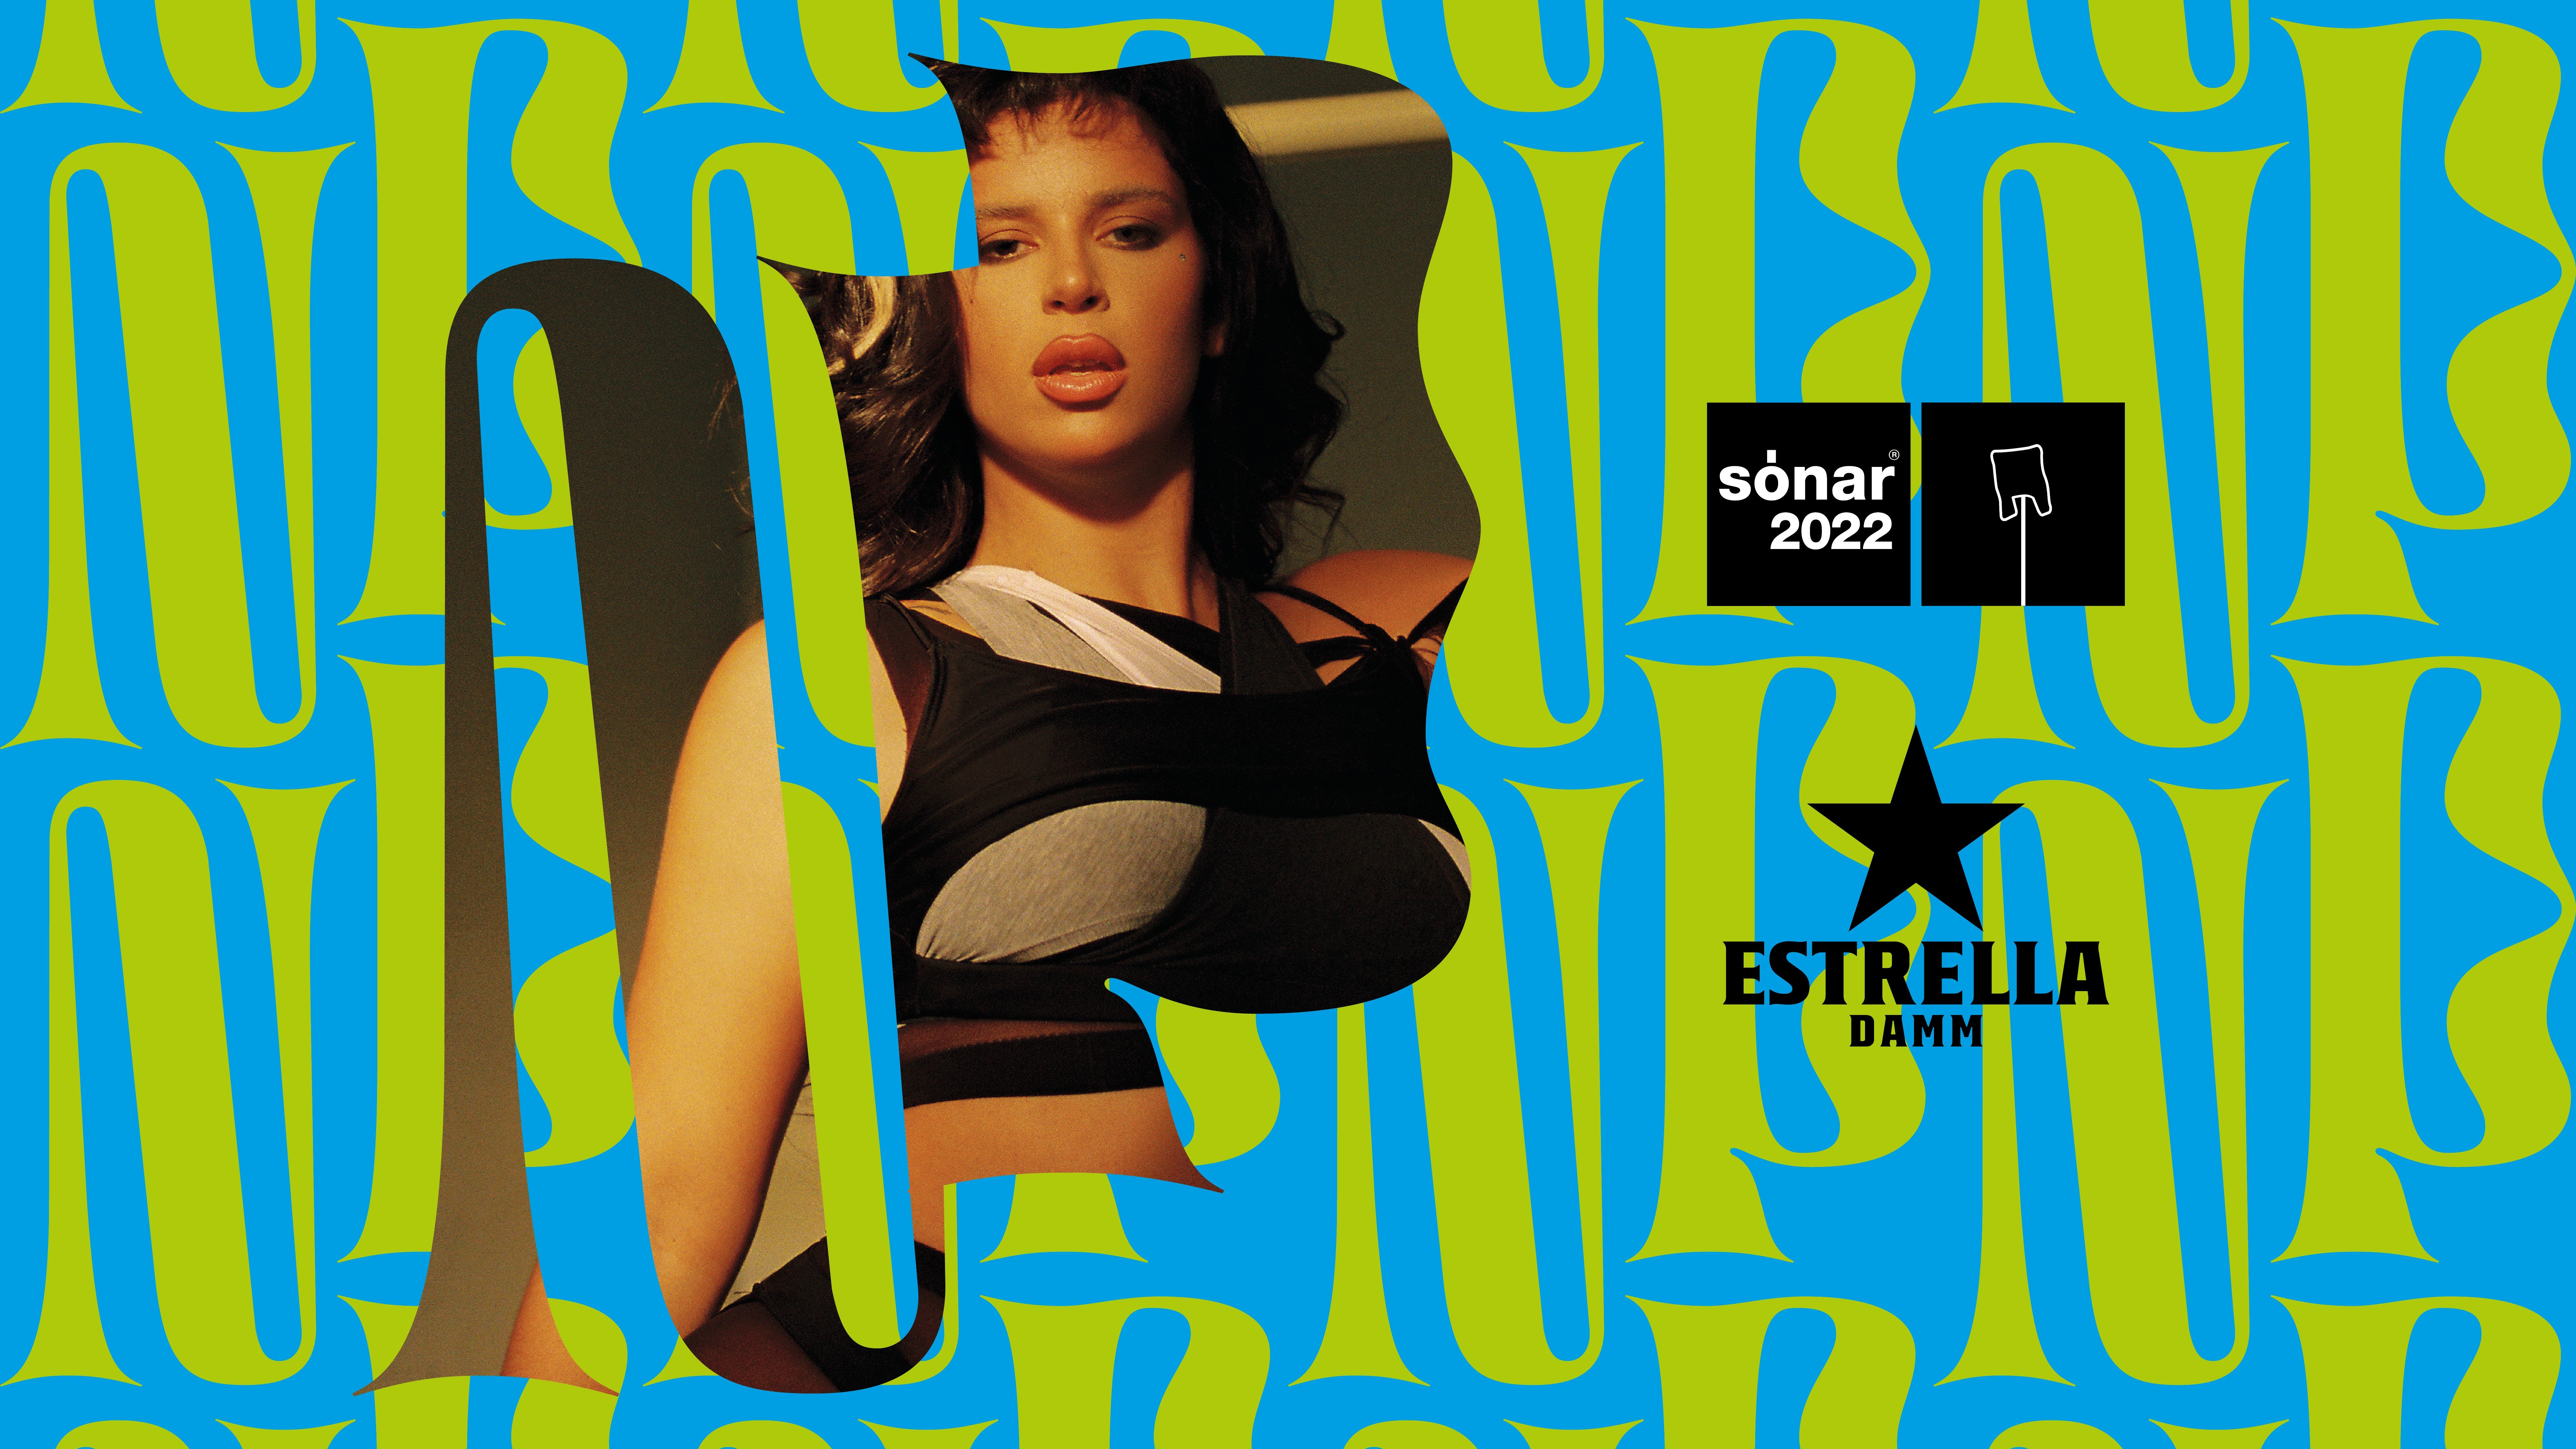 Estrella Damm invita a 14.000 personas al concierto del Sónar 2022 con Nathy Peluso